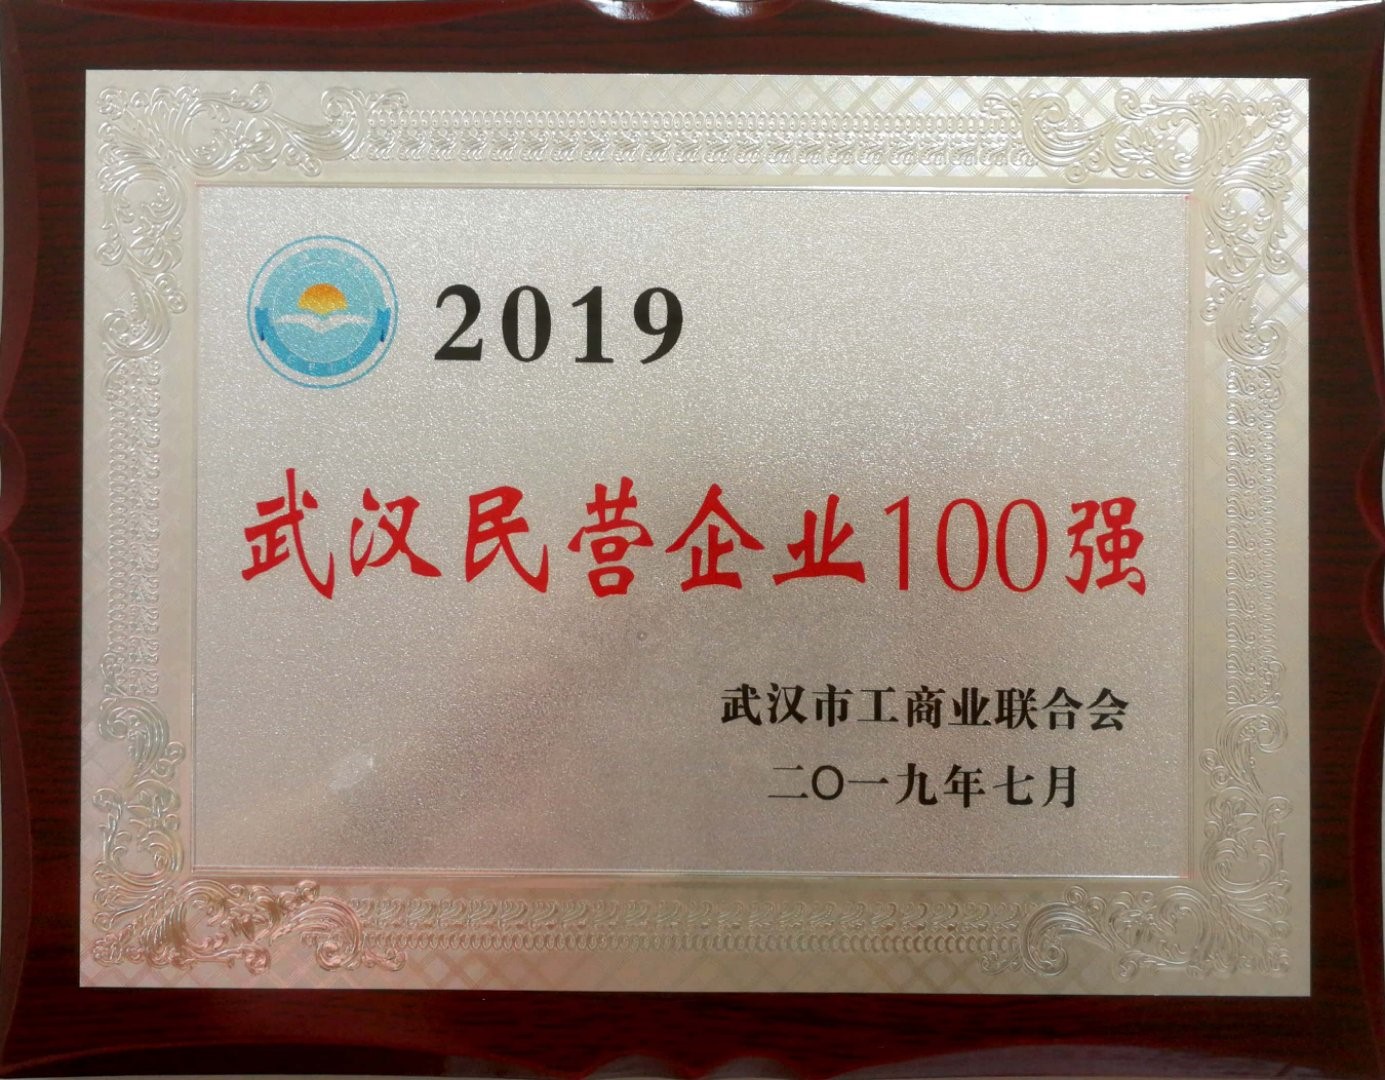 2019年度榮譽